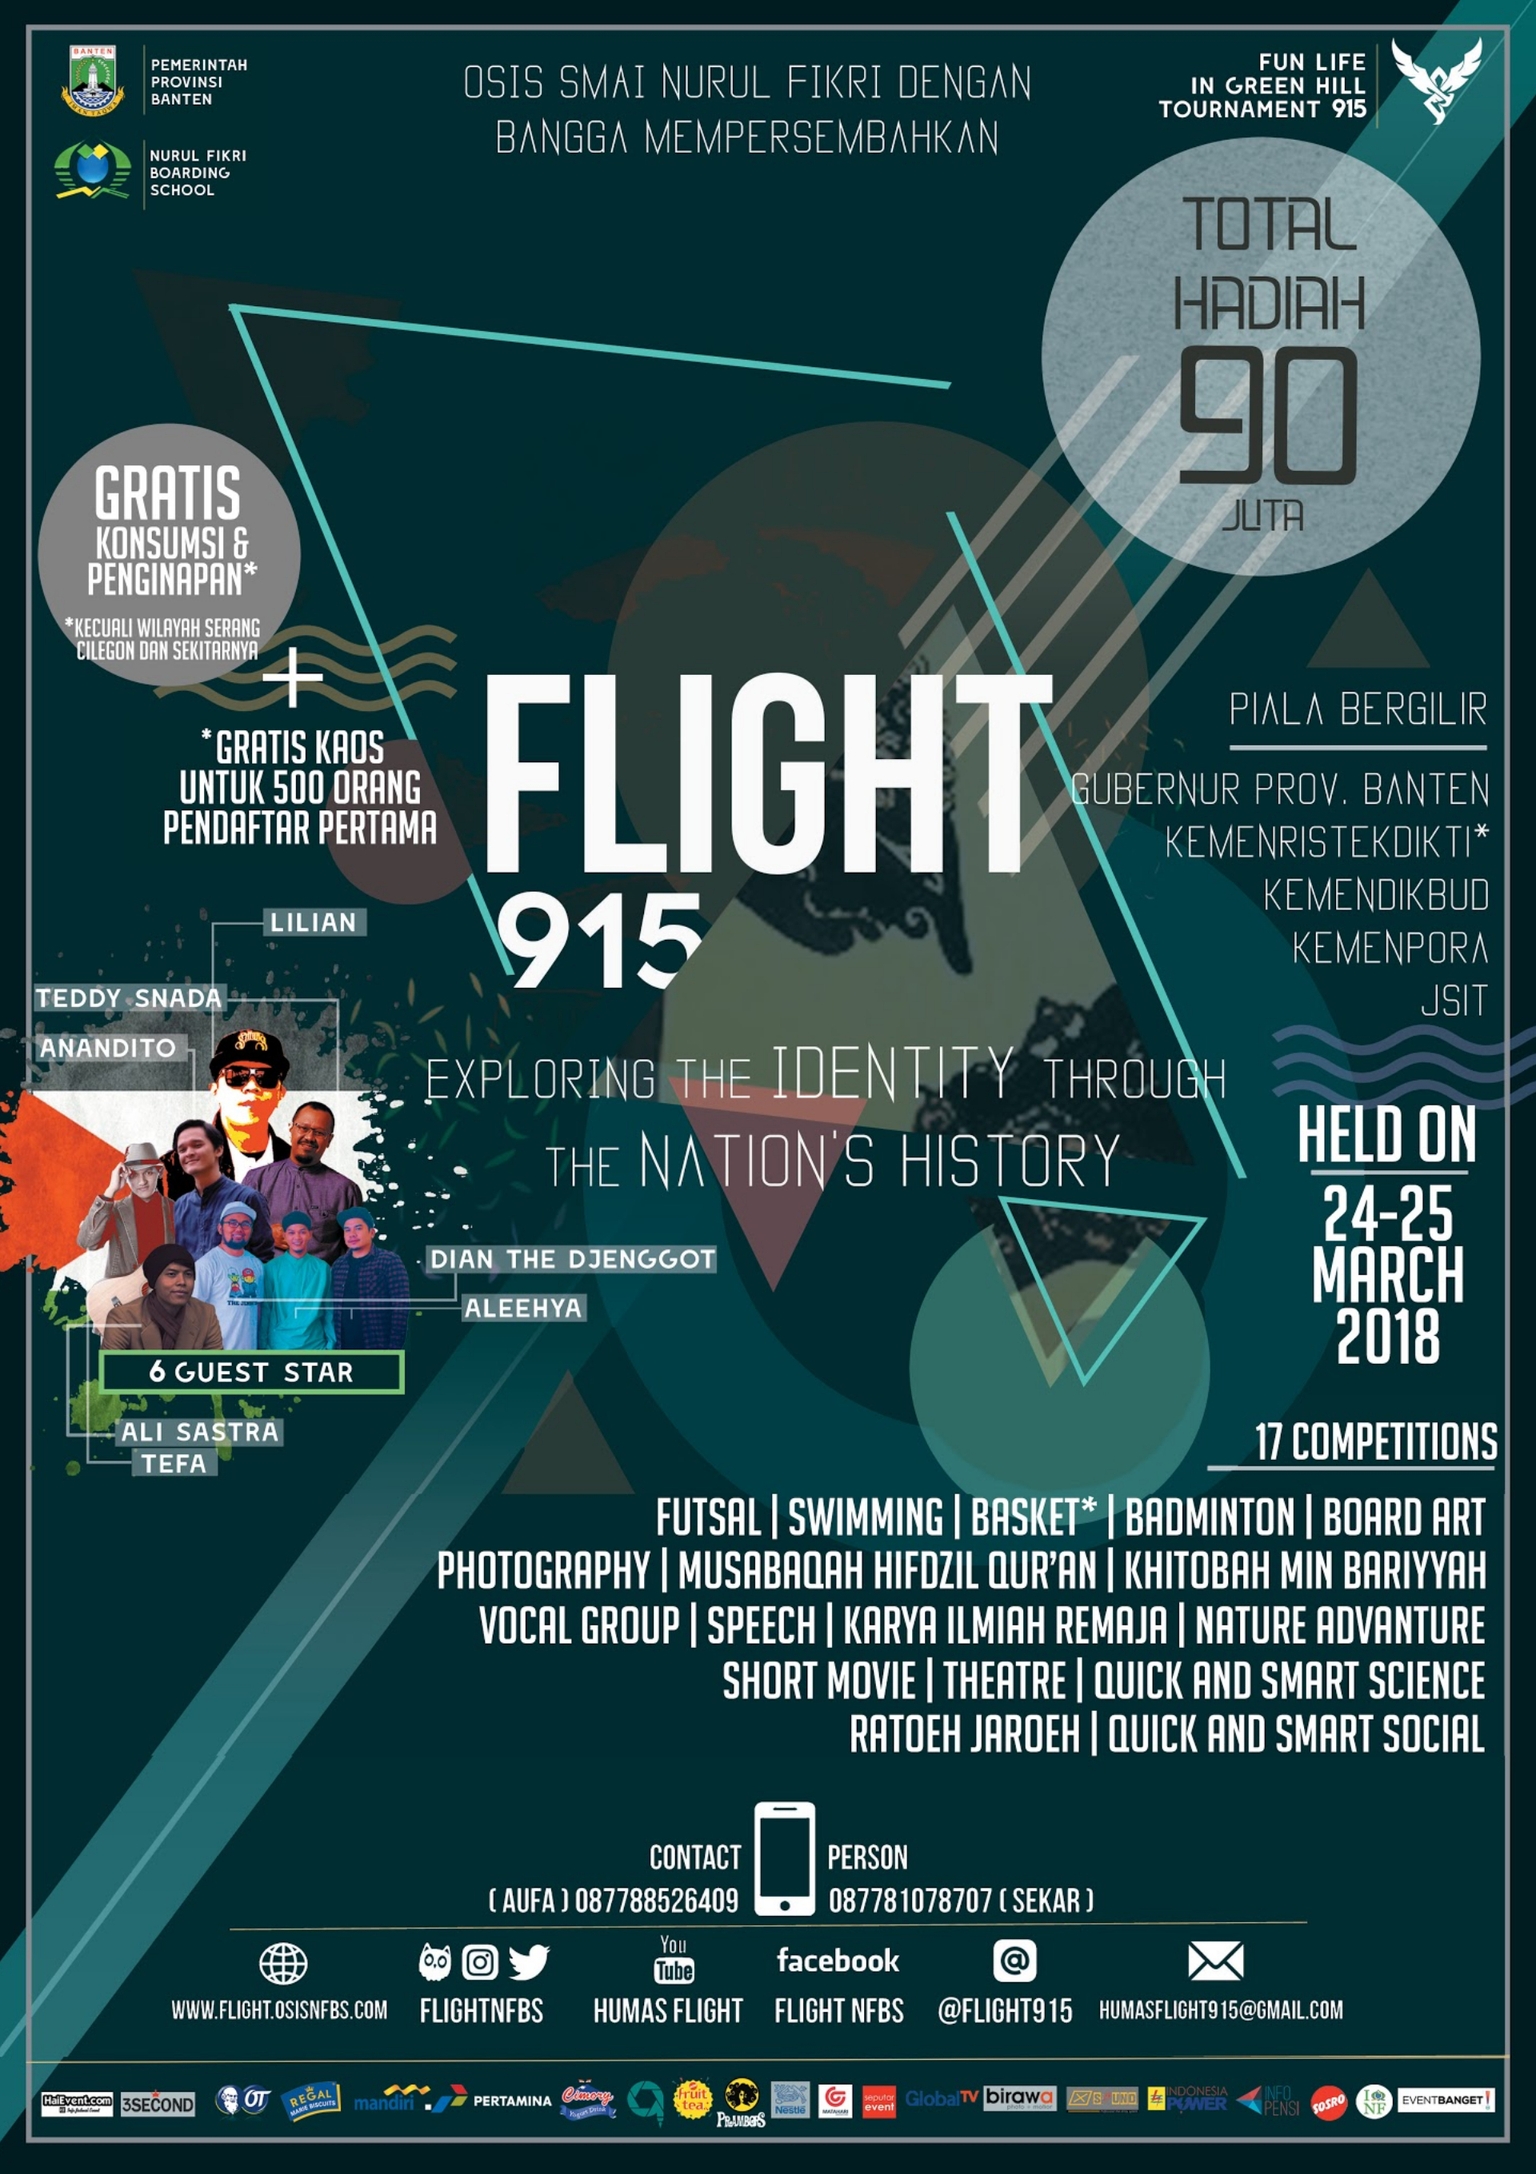 SMAI NURUL FIKRI - FLIGHT 915